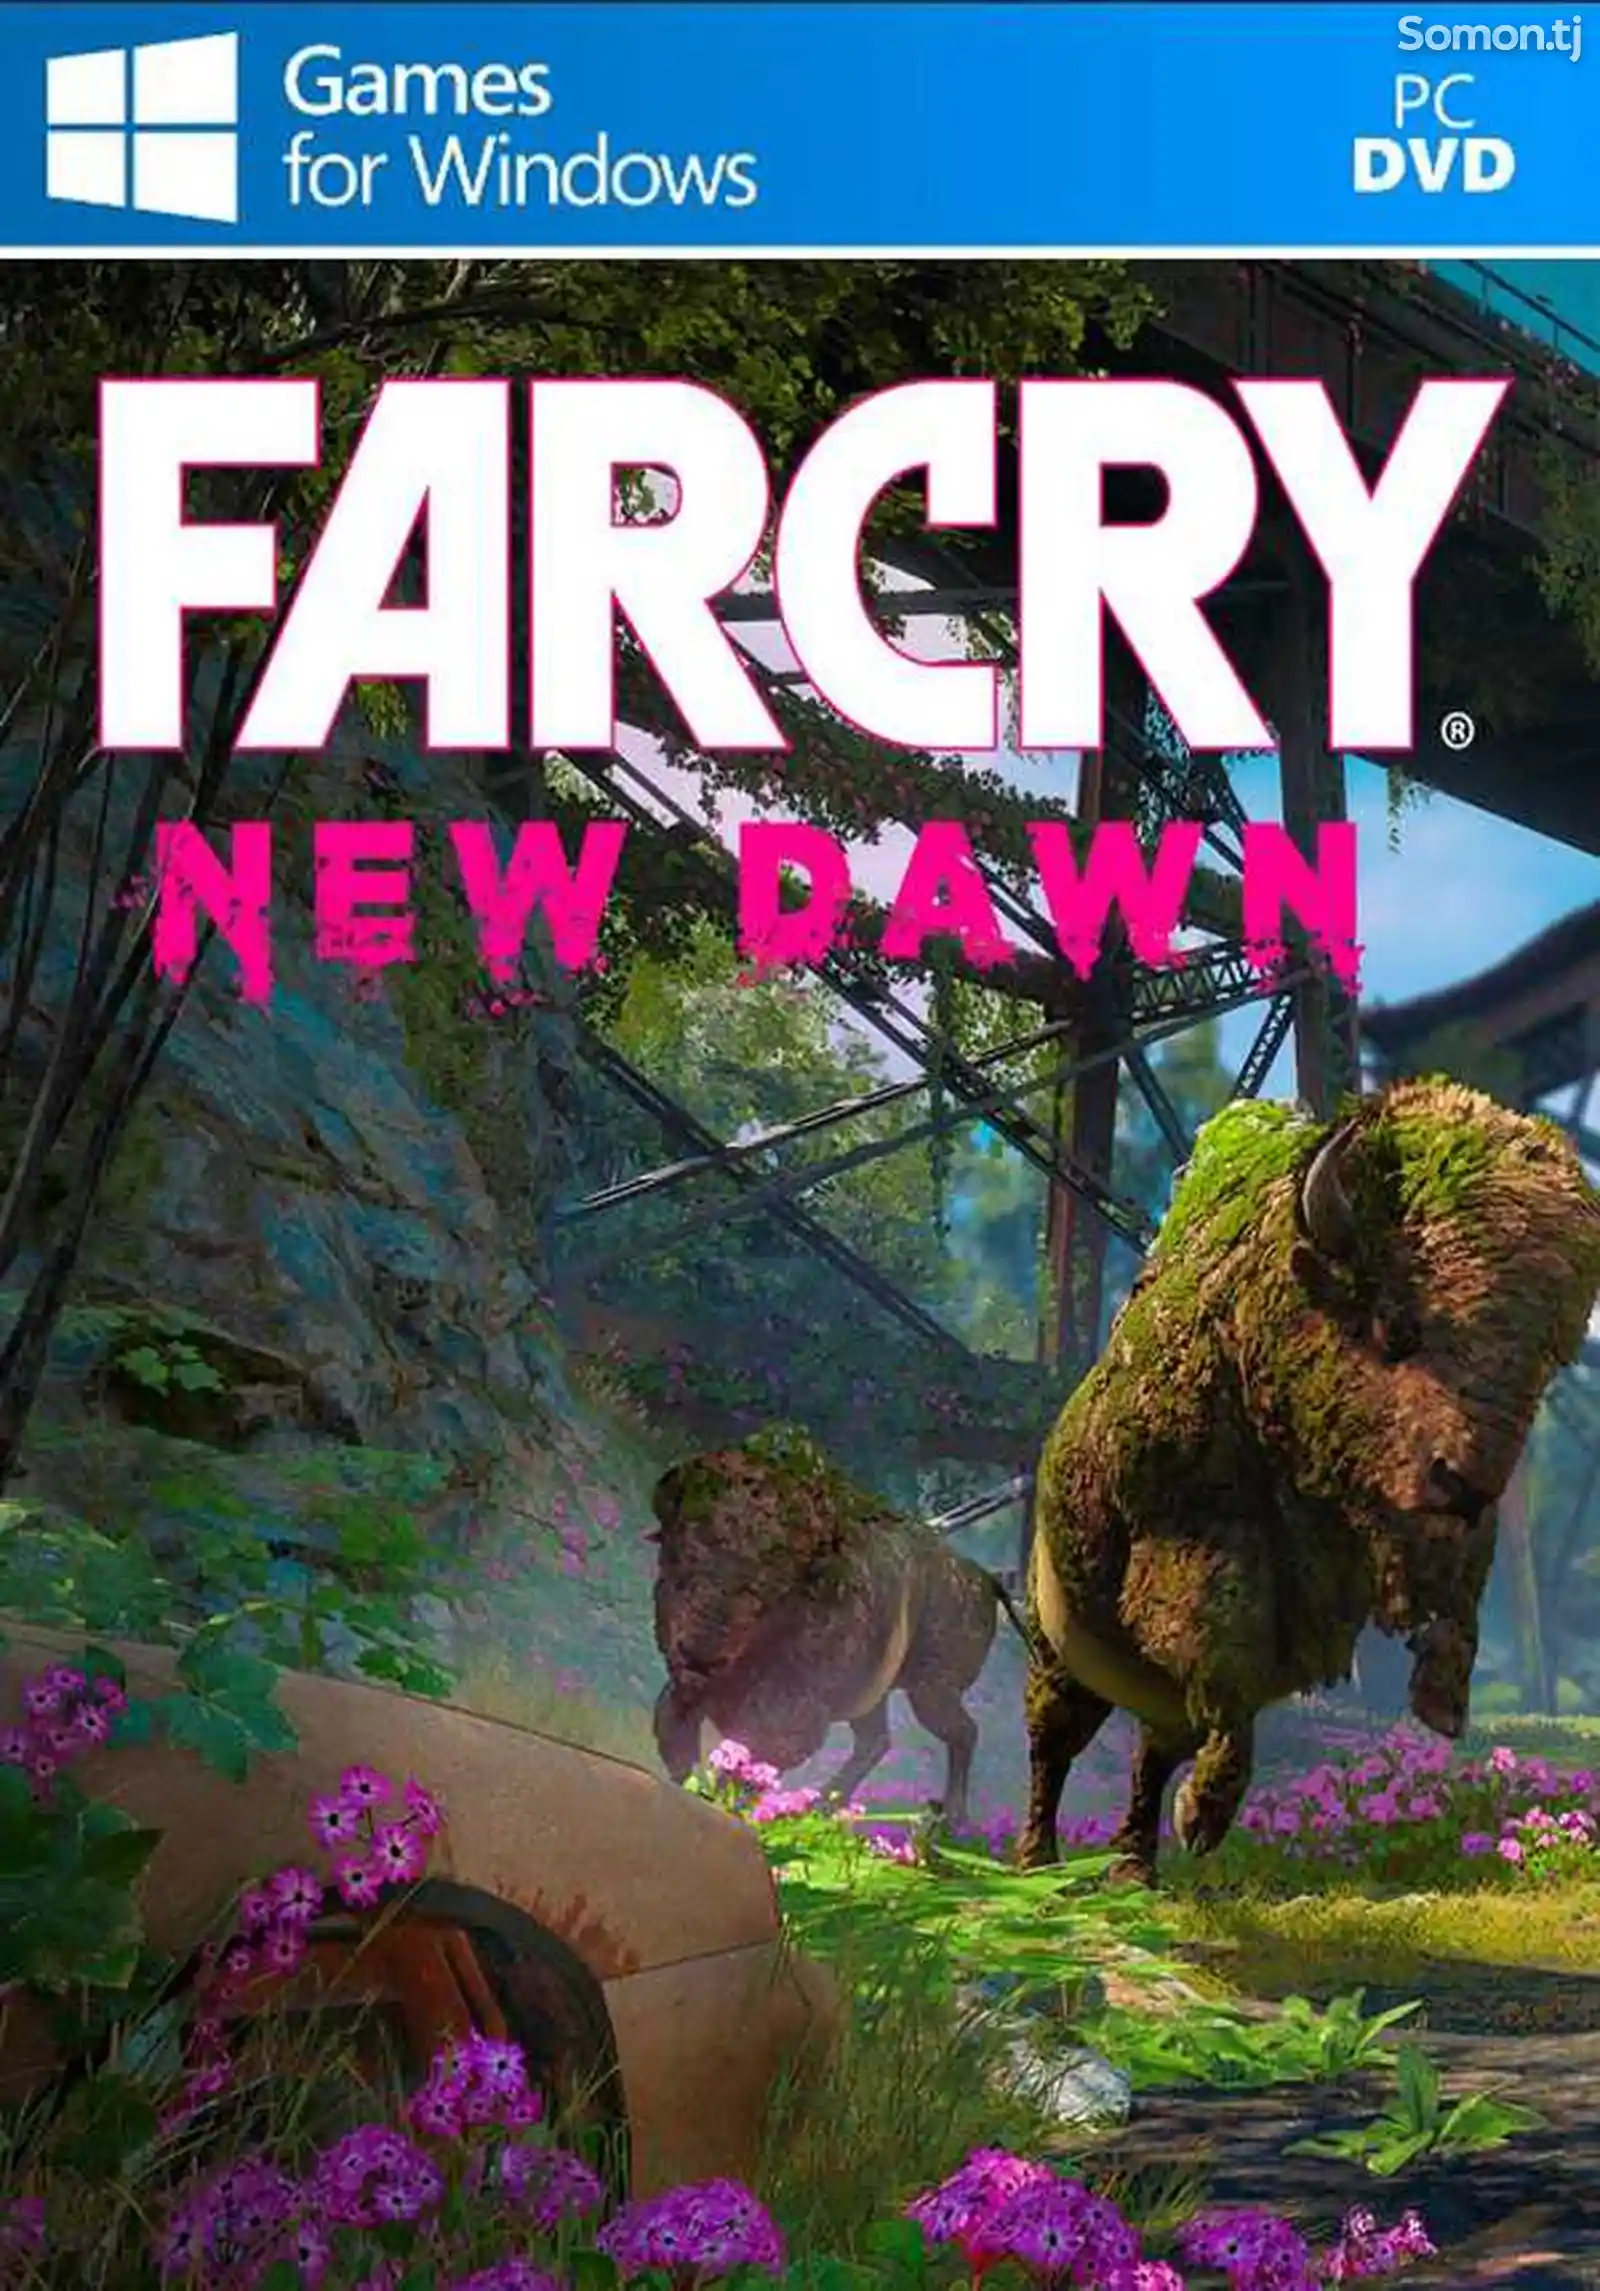 Игра Far cry new dawn для компьютера-пк-pc-1